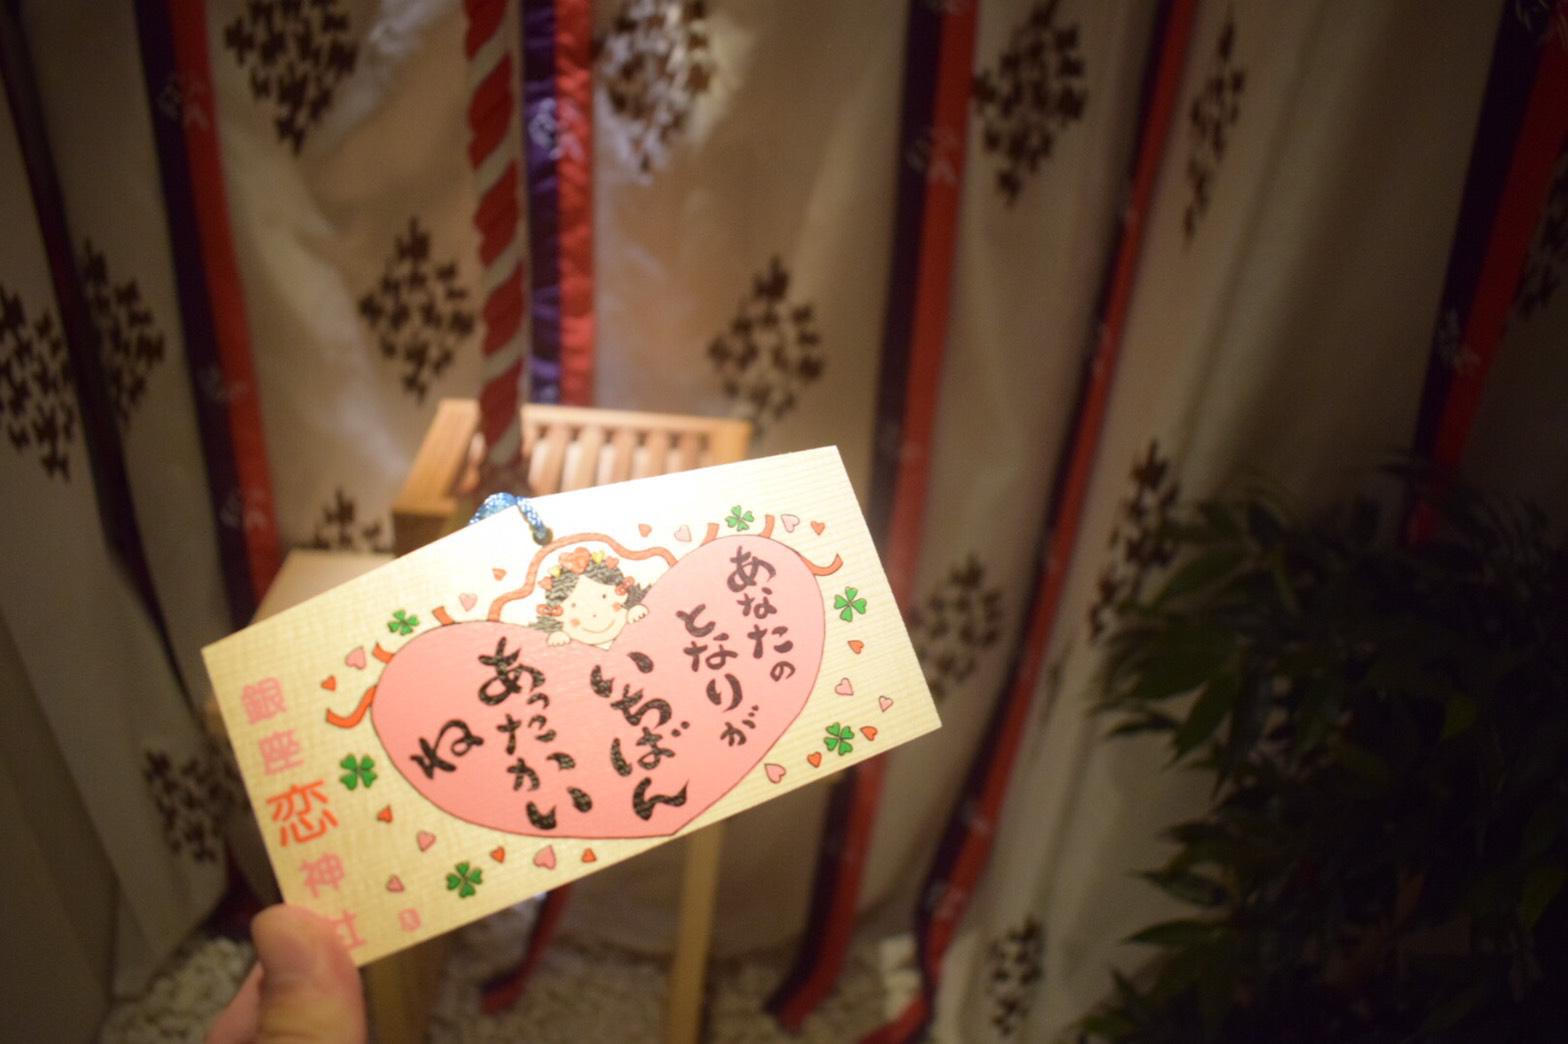 銀座恋神社 東京都銀座駅 の投稿 1回目 恋愛成就の神社と聞いたので 参拝しました となり ホトカミ